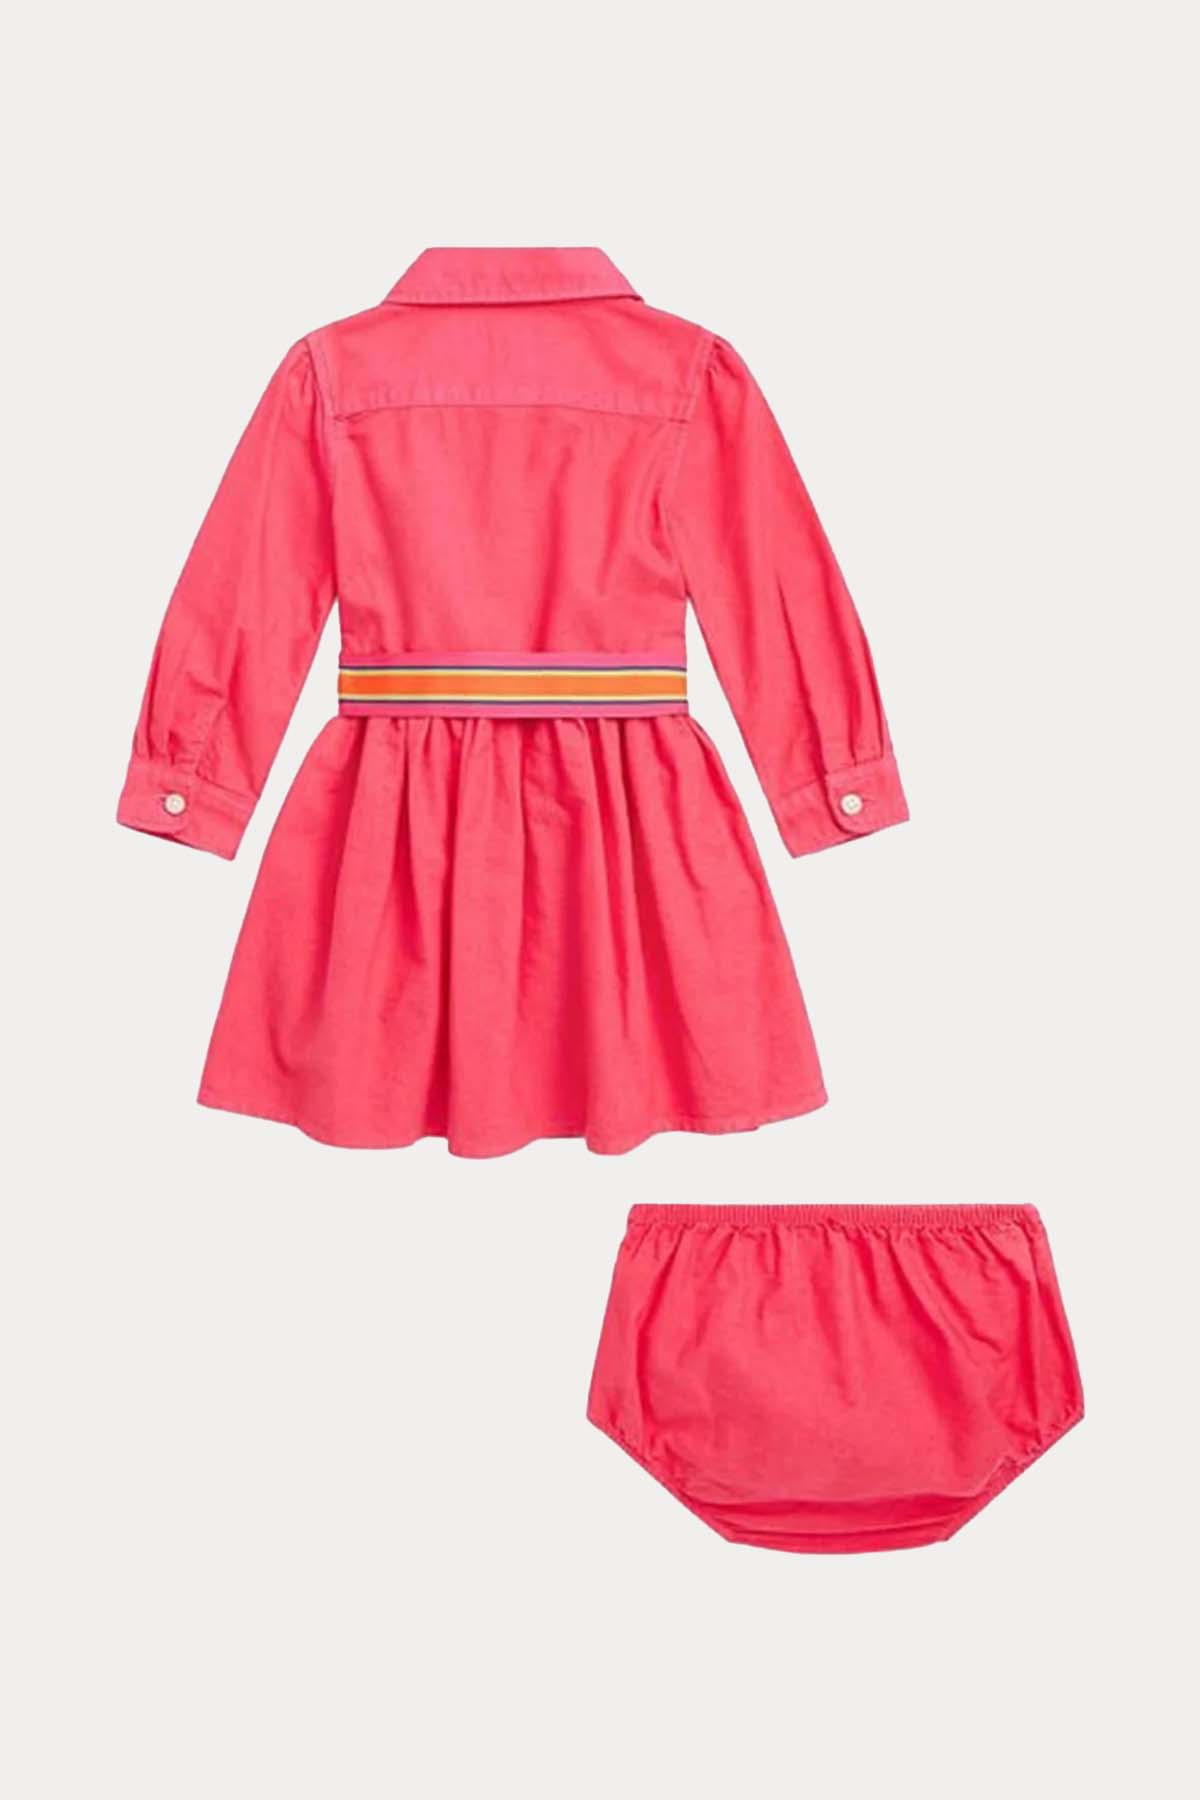 Polo Ralph Lauren Kids 12-18 Aylık Kız Bebek Gömlek Elbise